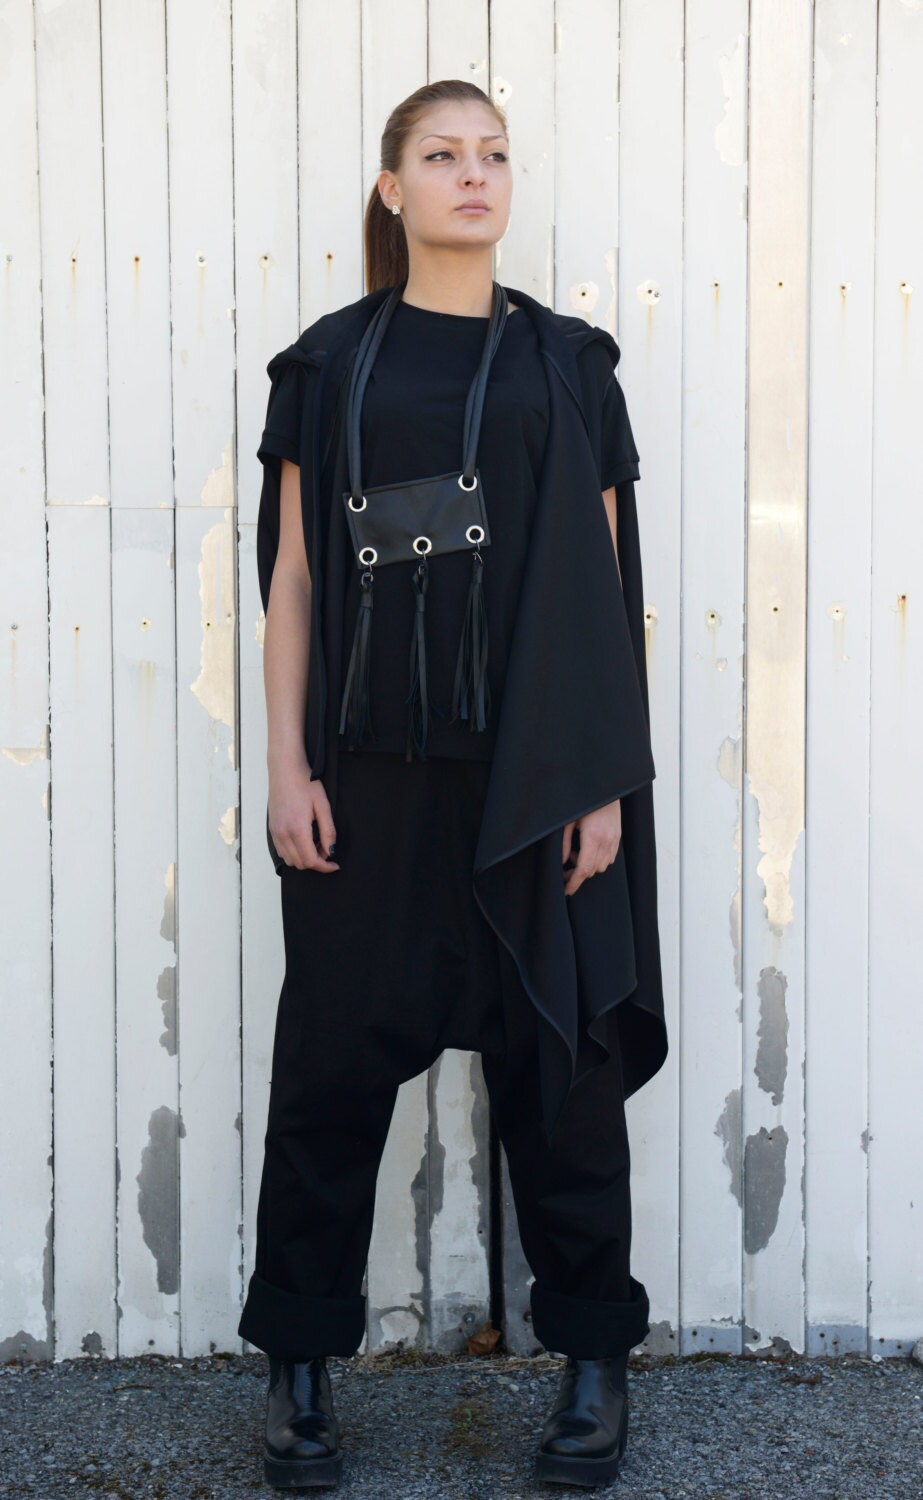 Black Asymmetric Vest / Sleeveless Casual Coat / Extravagant | Etsy